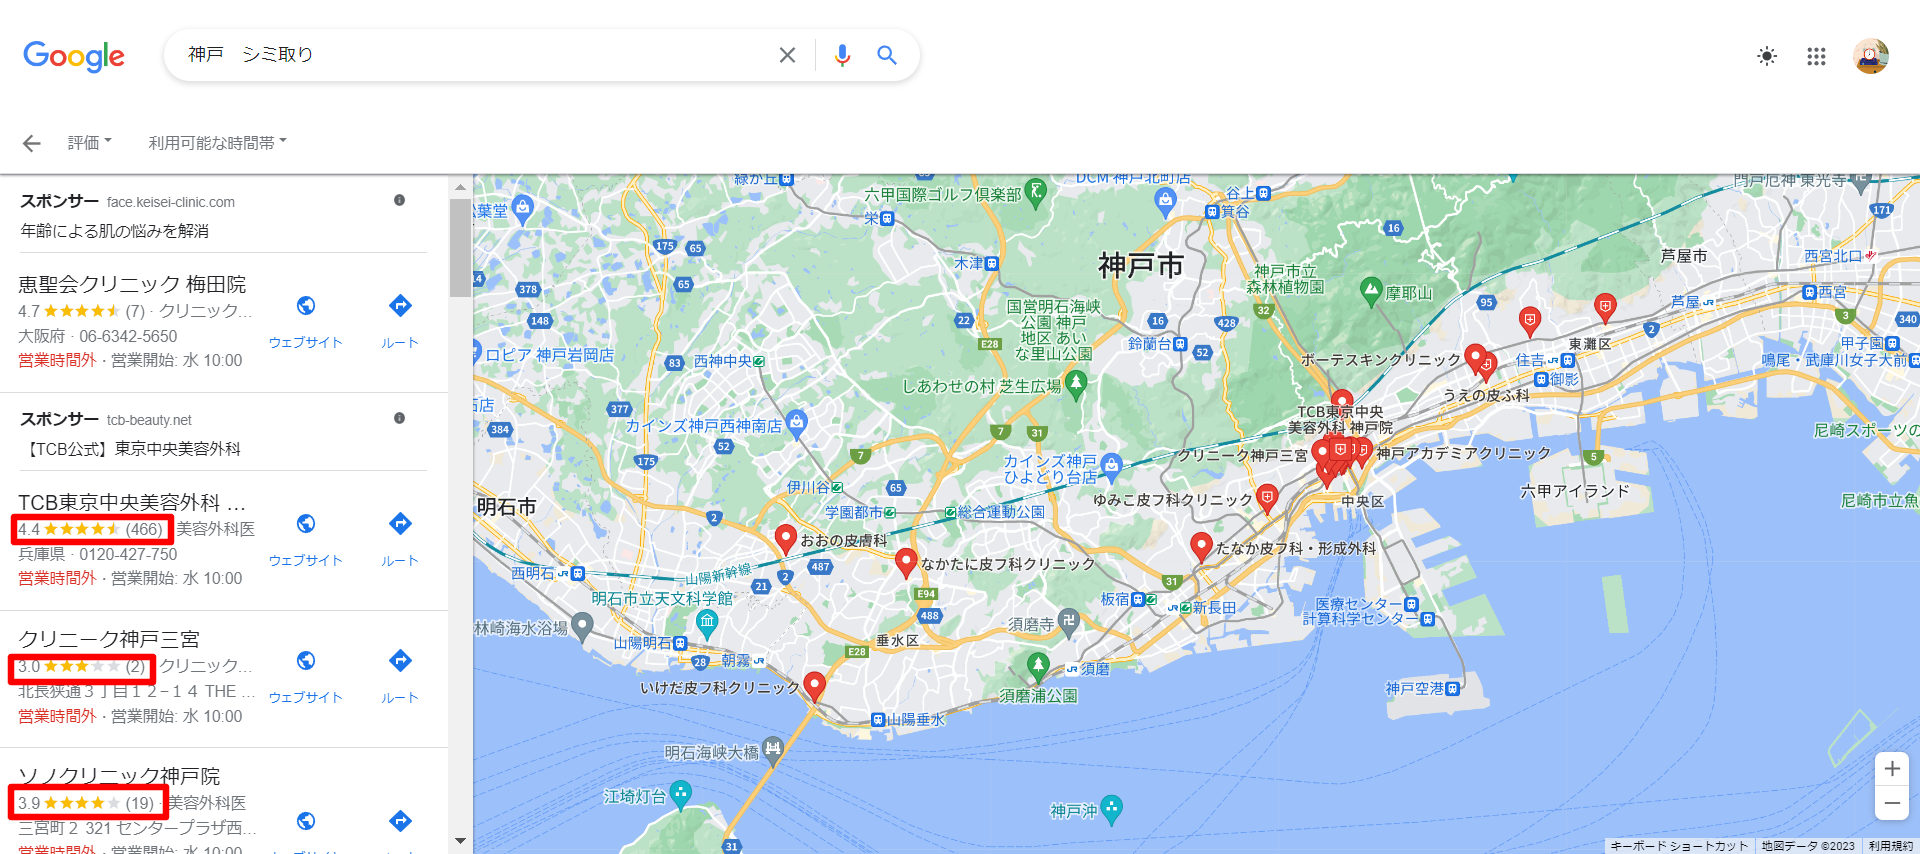 神戸-シミ取り-Google-検索